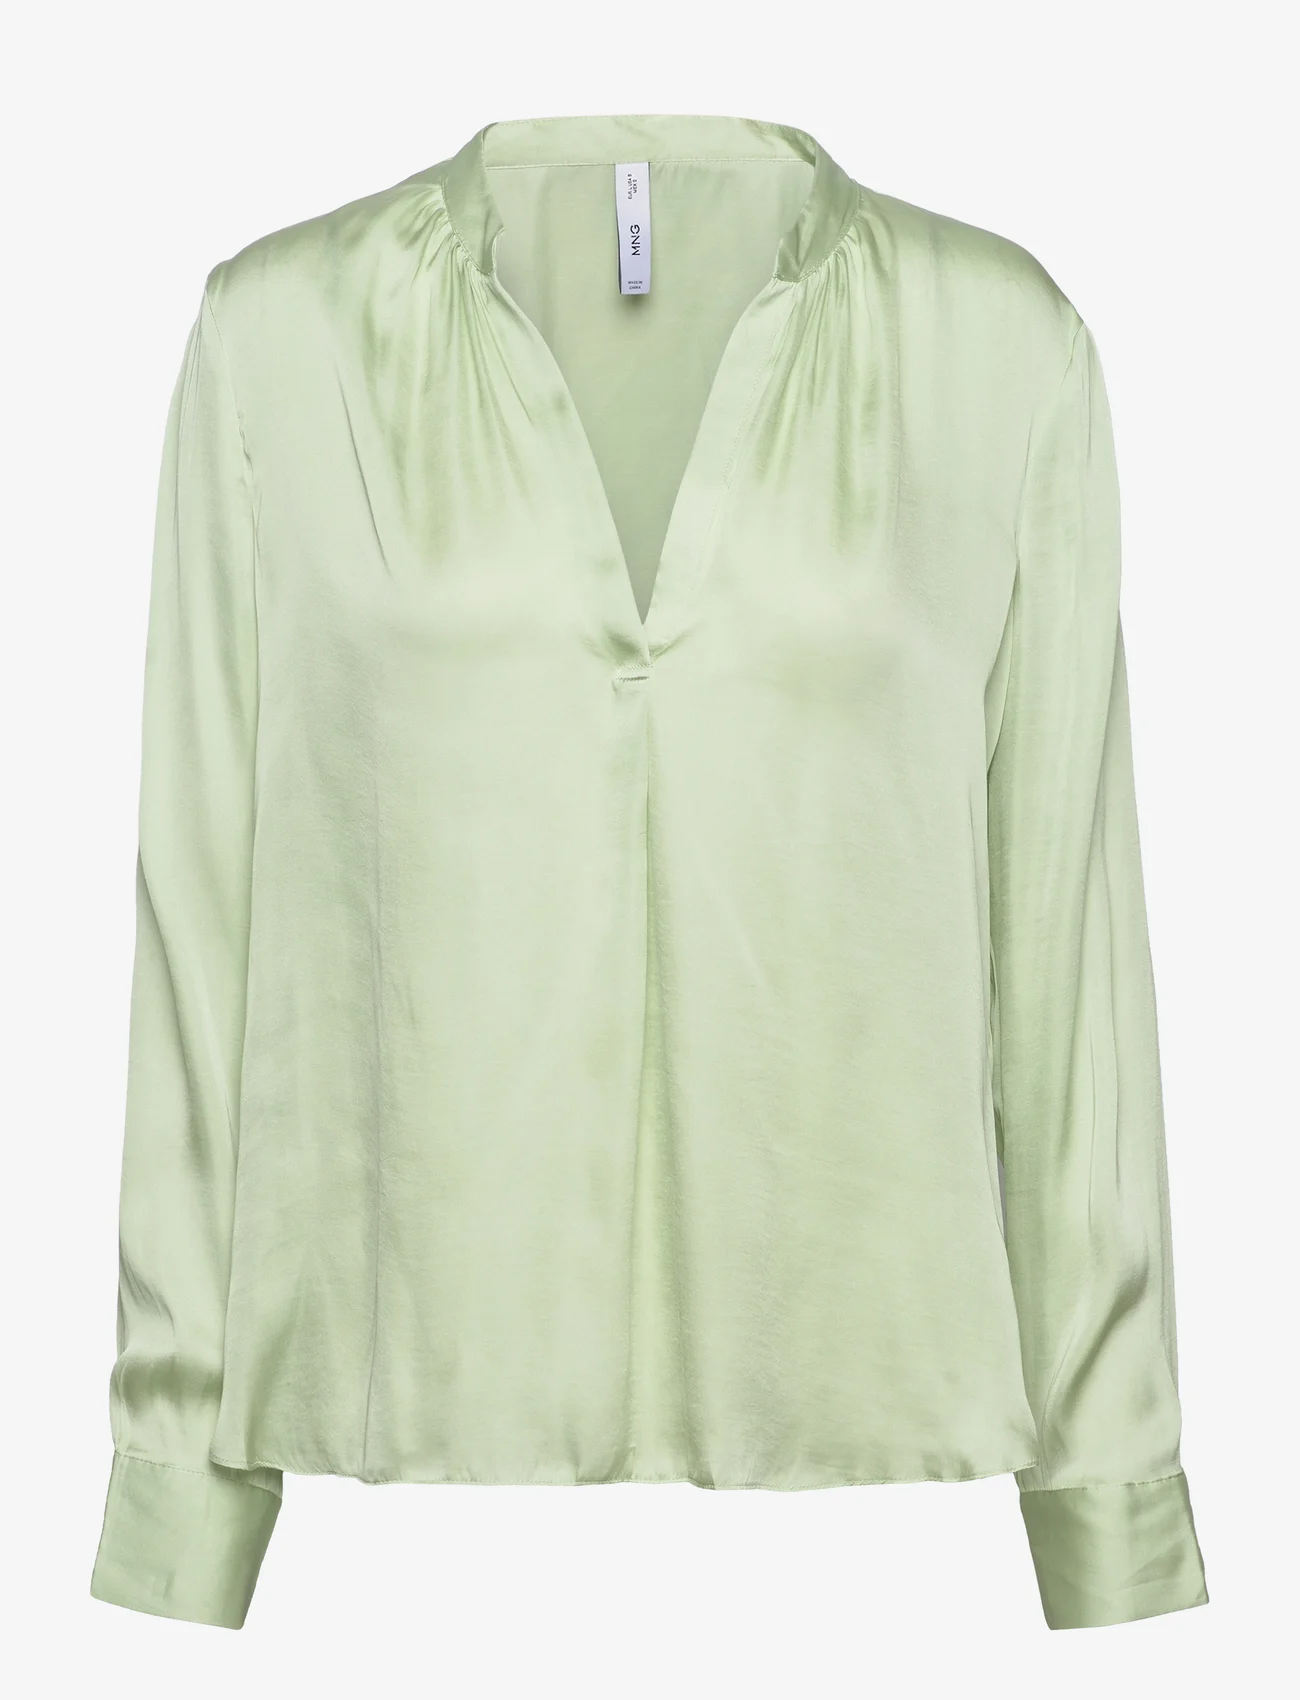 Mango - Mandarin-collar satin blouse - langermede bluser - green - 0